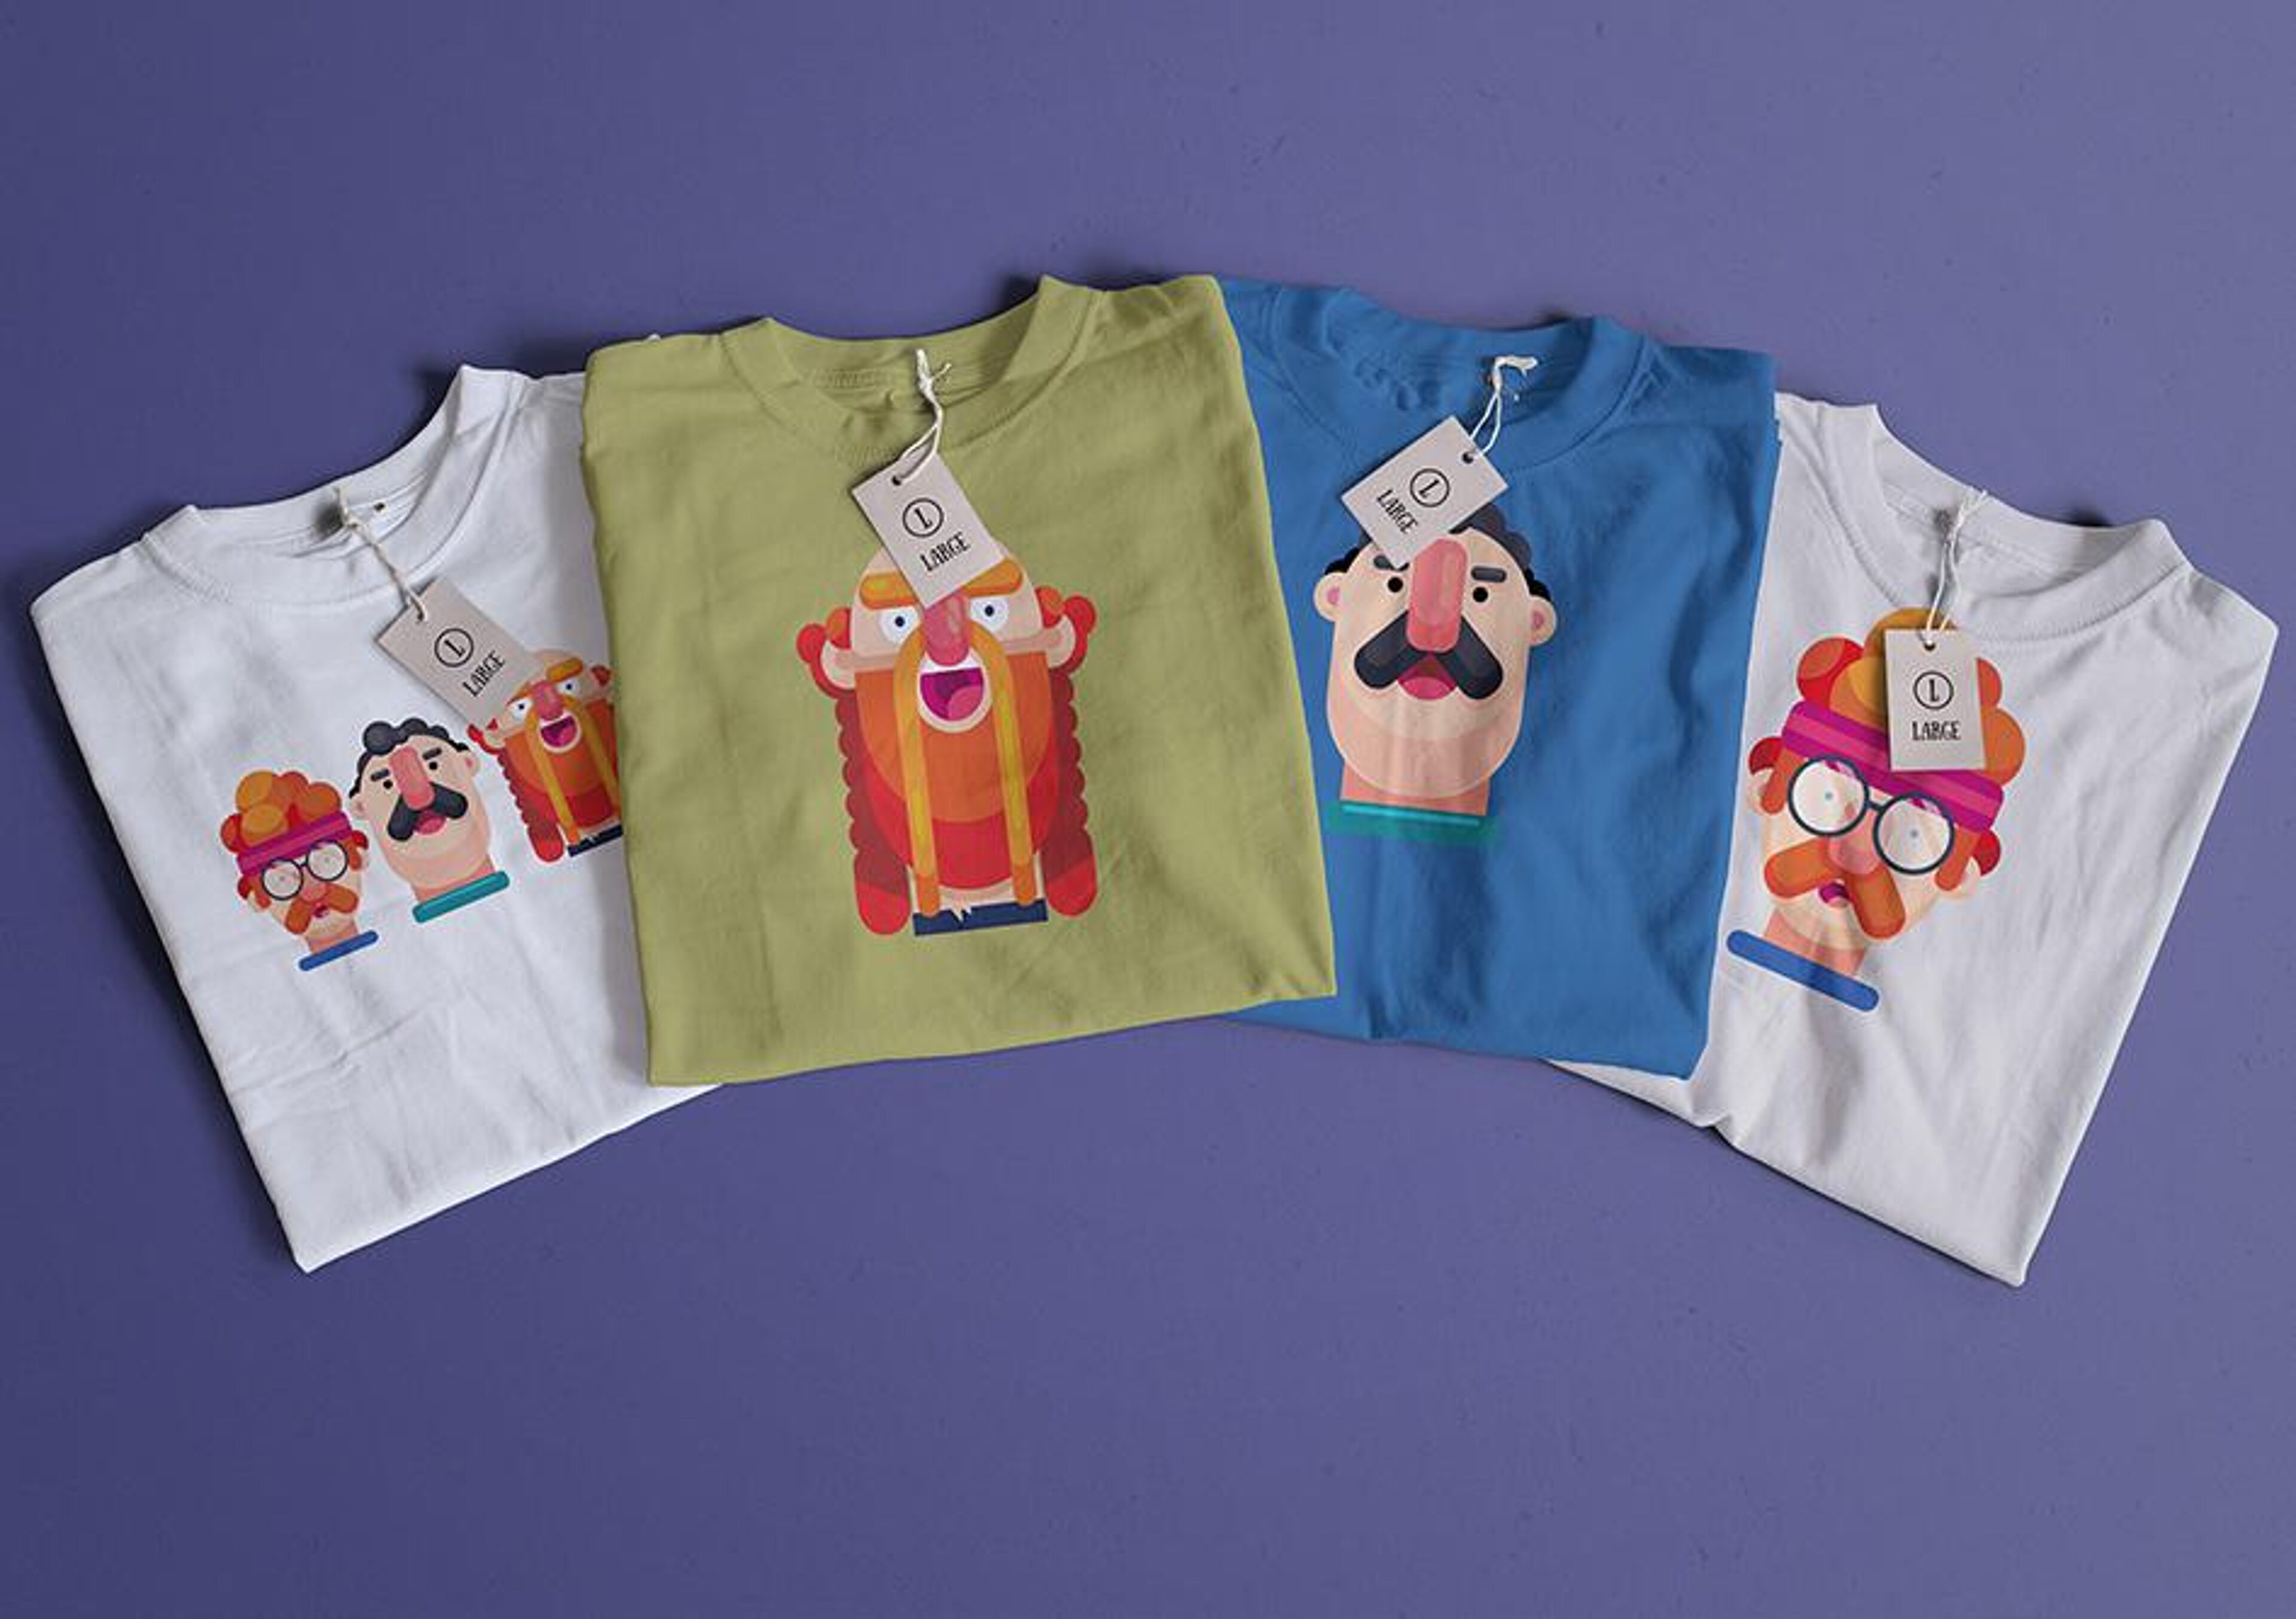 Cuatro camisetas con estampados de personajes animados, expuestas sobre una superficie morada.